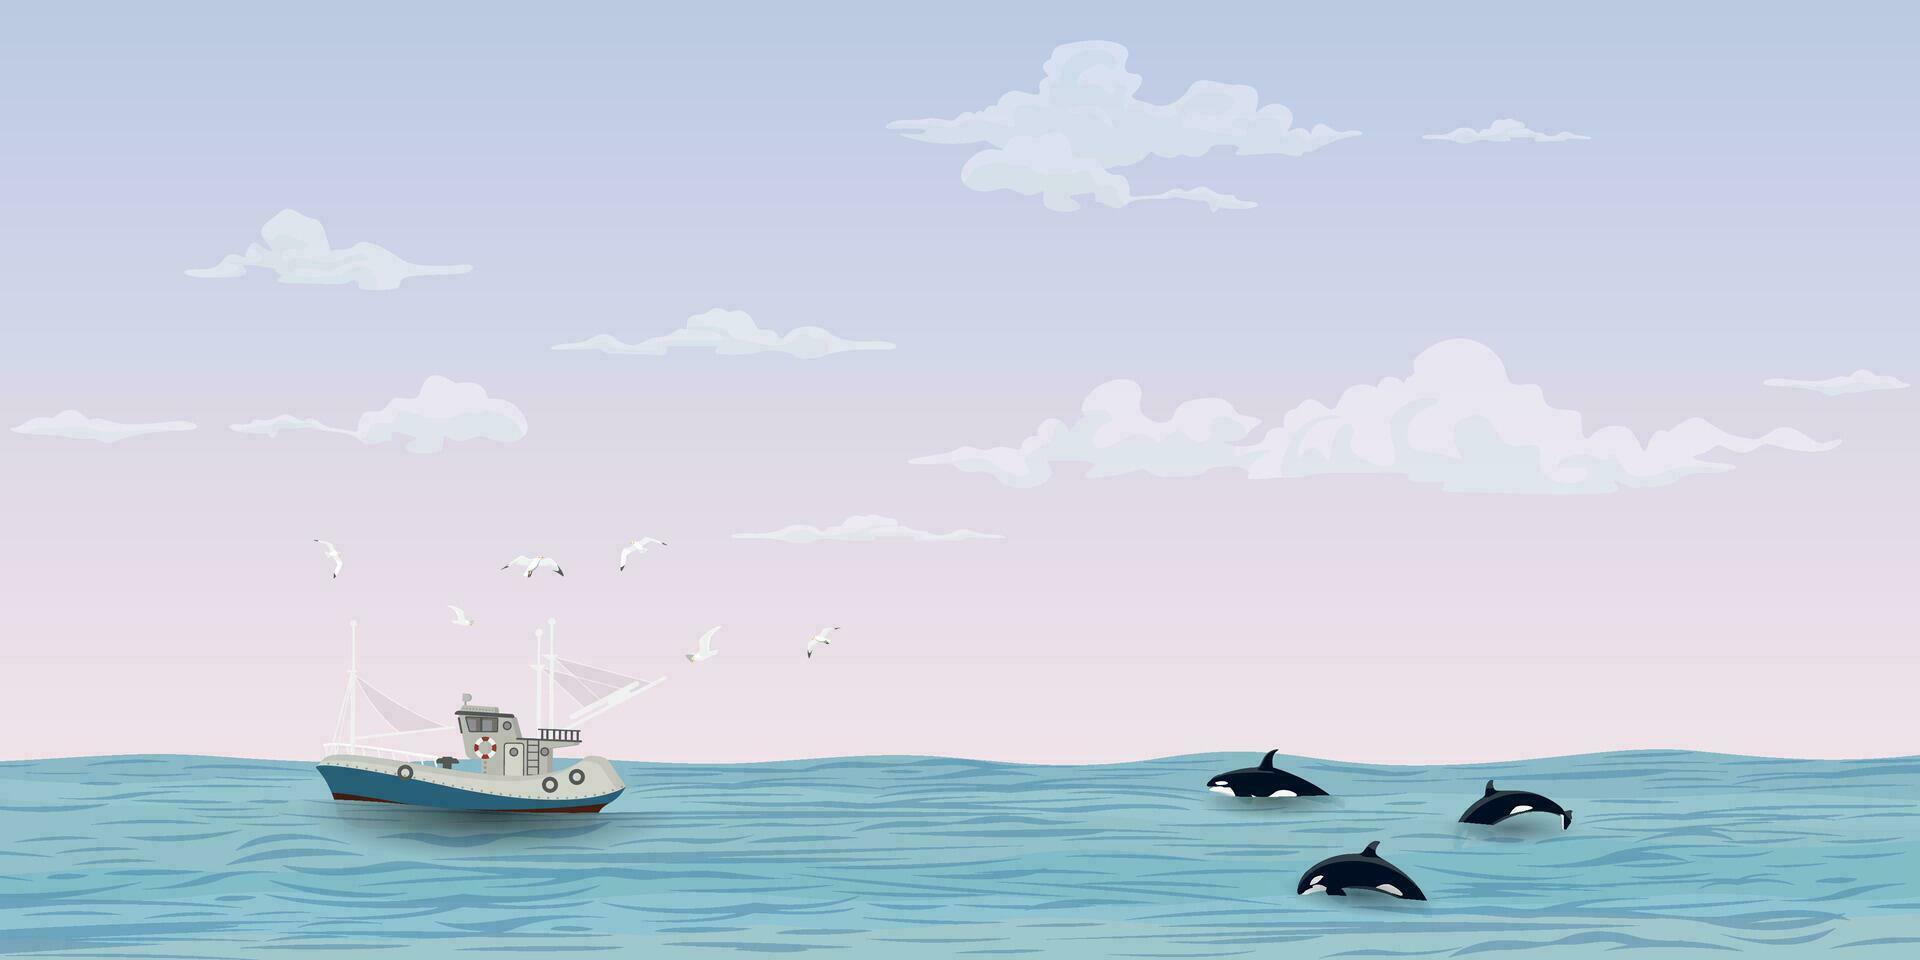 paysage marin avec pêche bateau suivi par mouettes et tueur baleine pack avoir spectaculaire ciel Contexte vecteur illustration. océan avec bateau, mouettes, orque, ciel et des nuages Contexte.